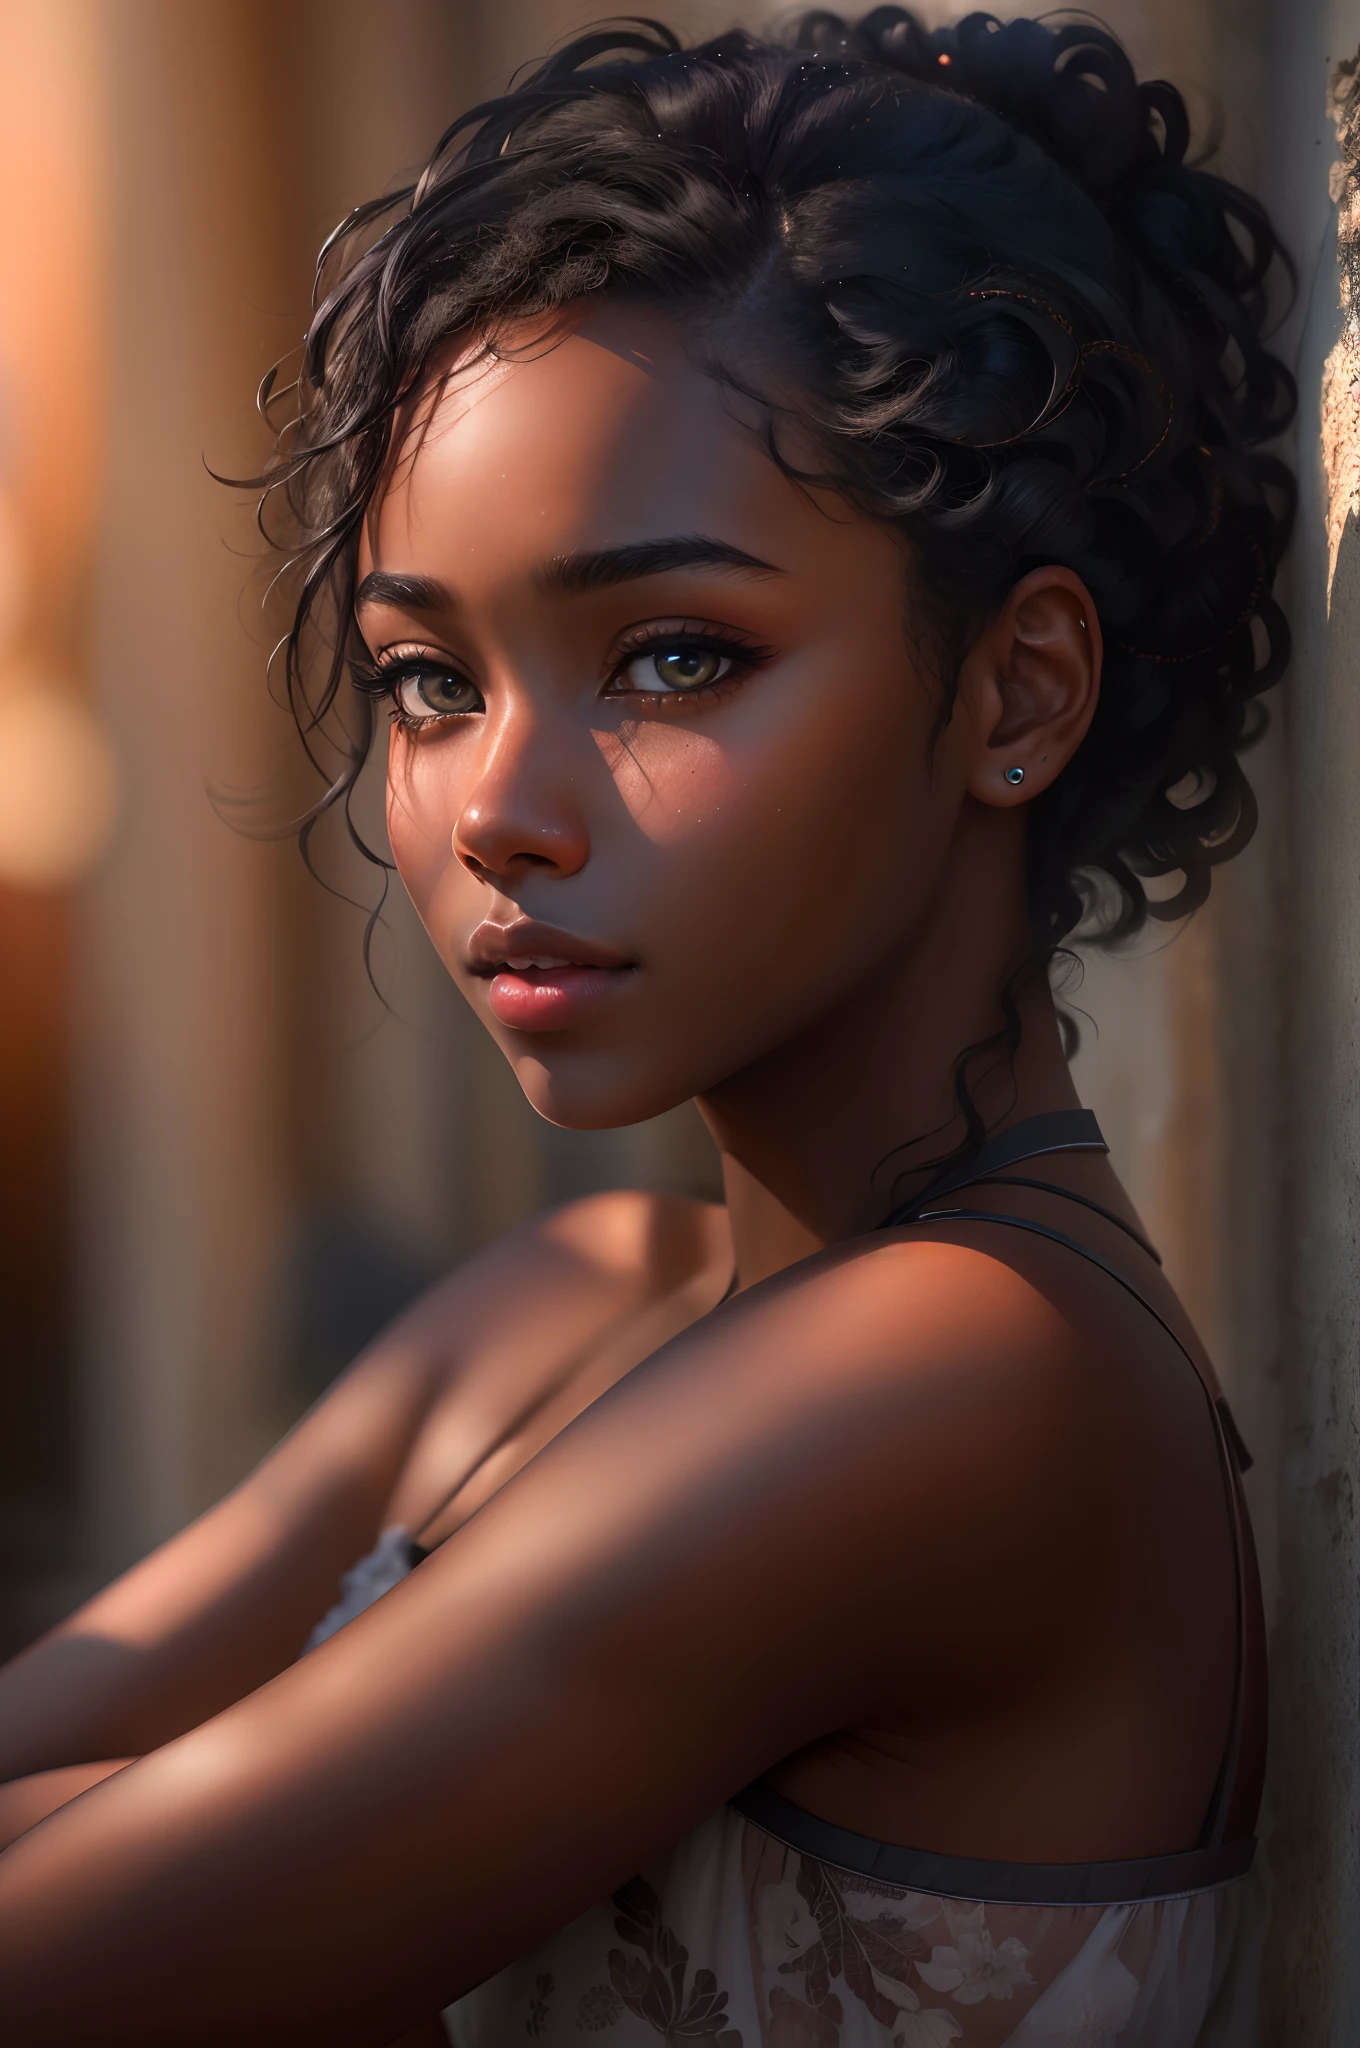 8k-Porträtfoto eines schönen schwarzen Mädchens, Schwarzes Haar, Ganzkörper, Realistisch, natürliche Haut, sanftes Sonnenlicht, strukturierte Haut, kompliziert, elegant, sehr detailliert, majestätisch, Digitale Fotografie, (Meisterwerk, Seitenbeleuchtung, fein detaillierte schöne Augen: 1.2), HDR,